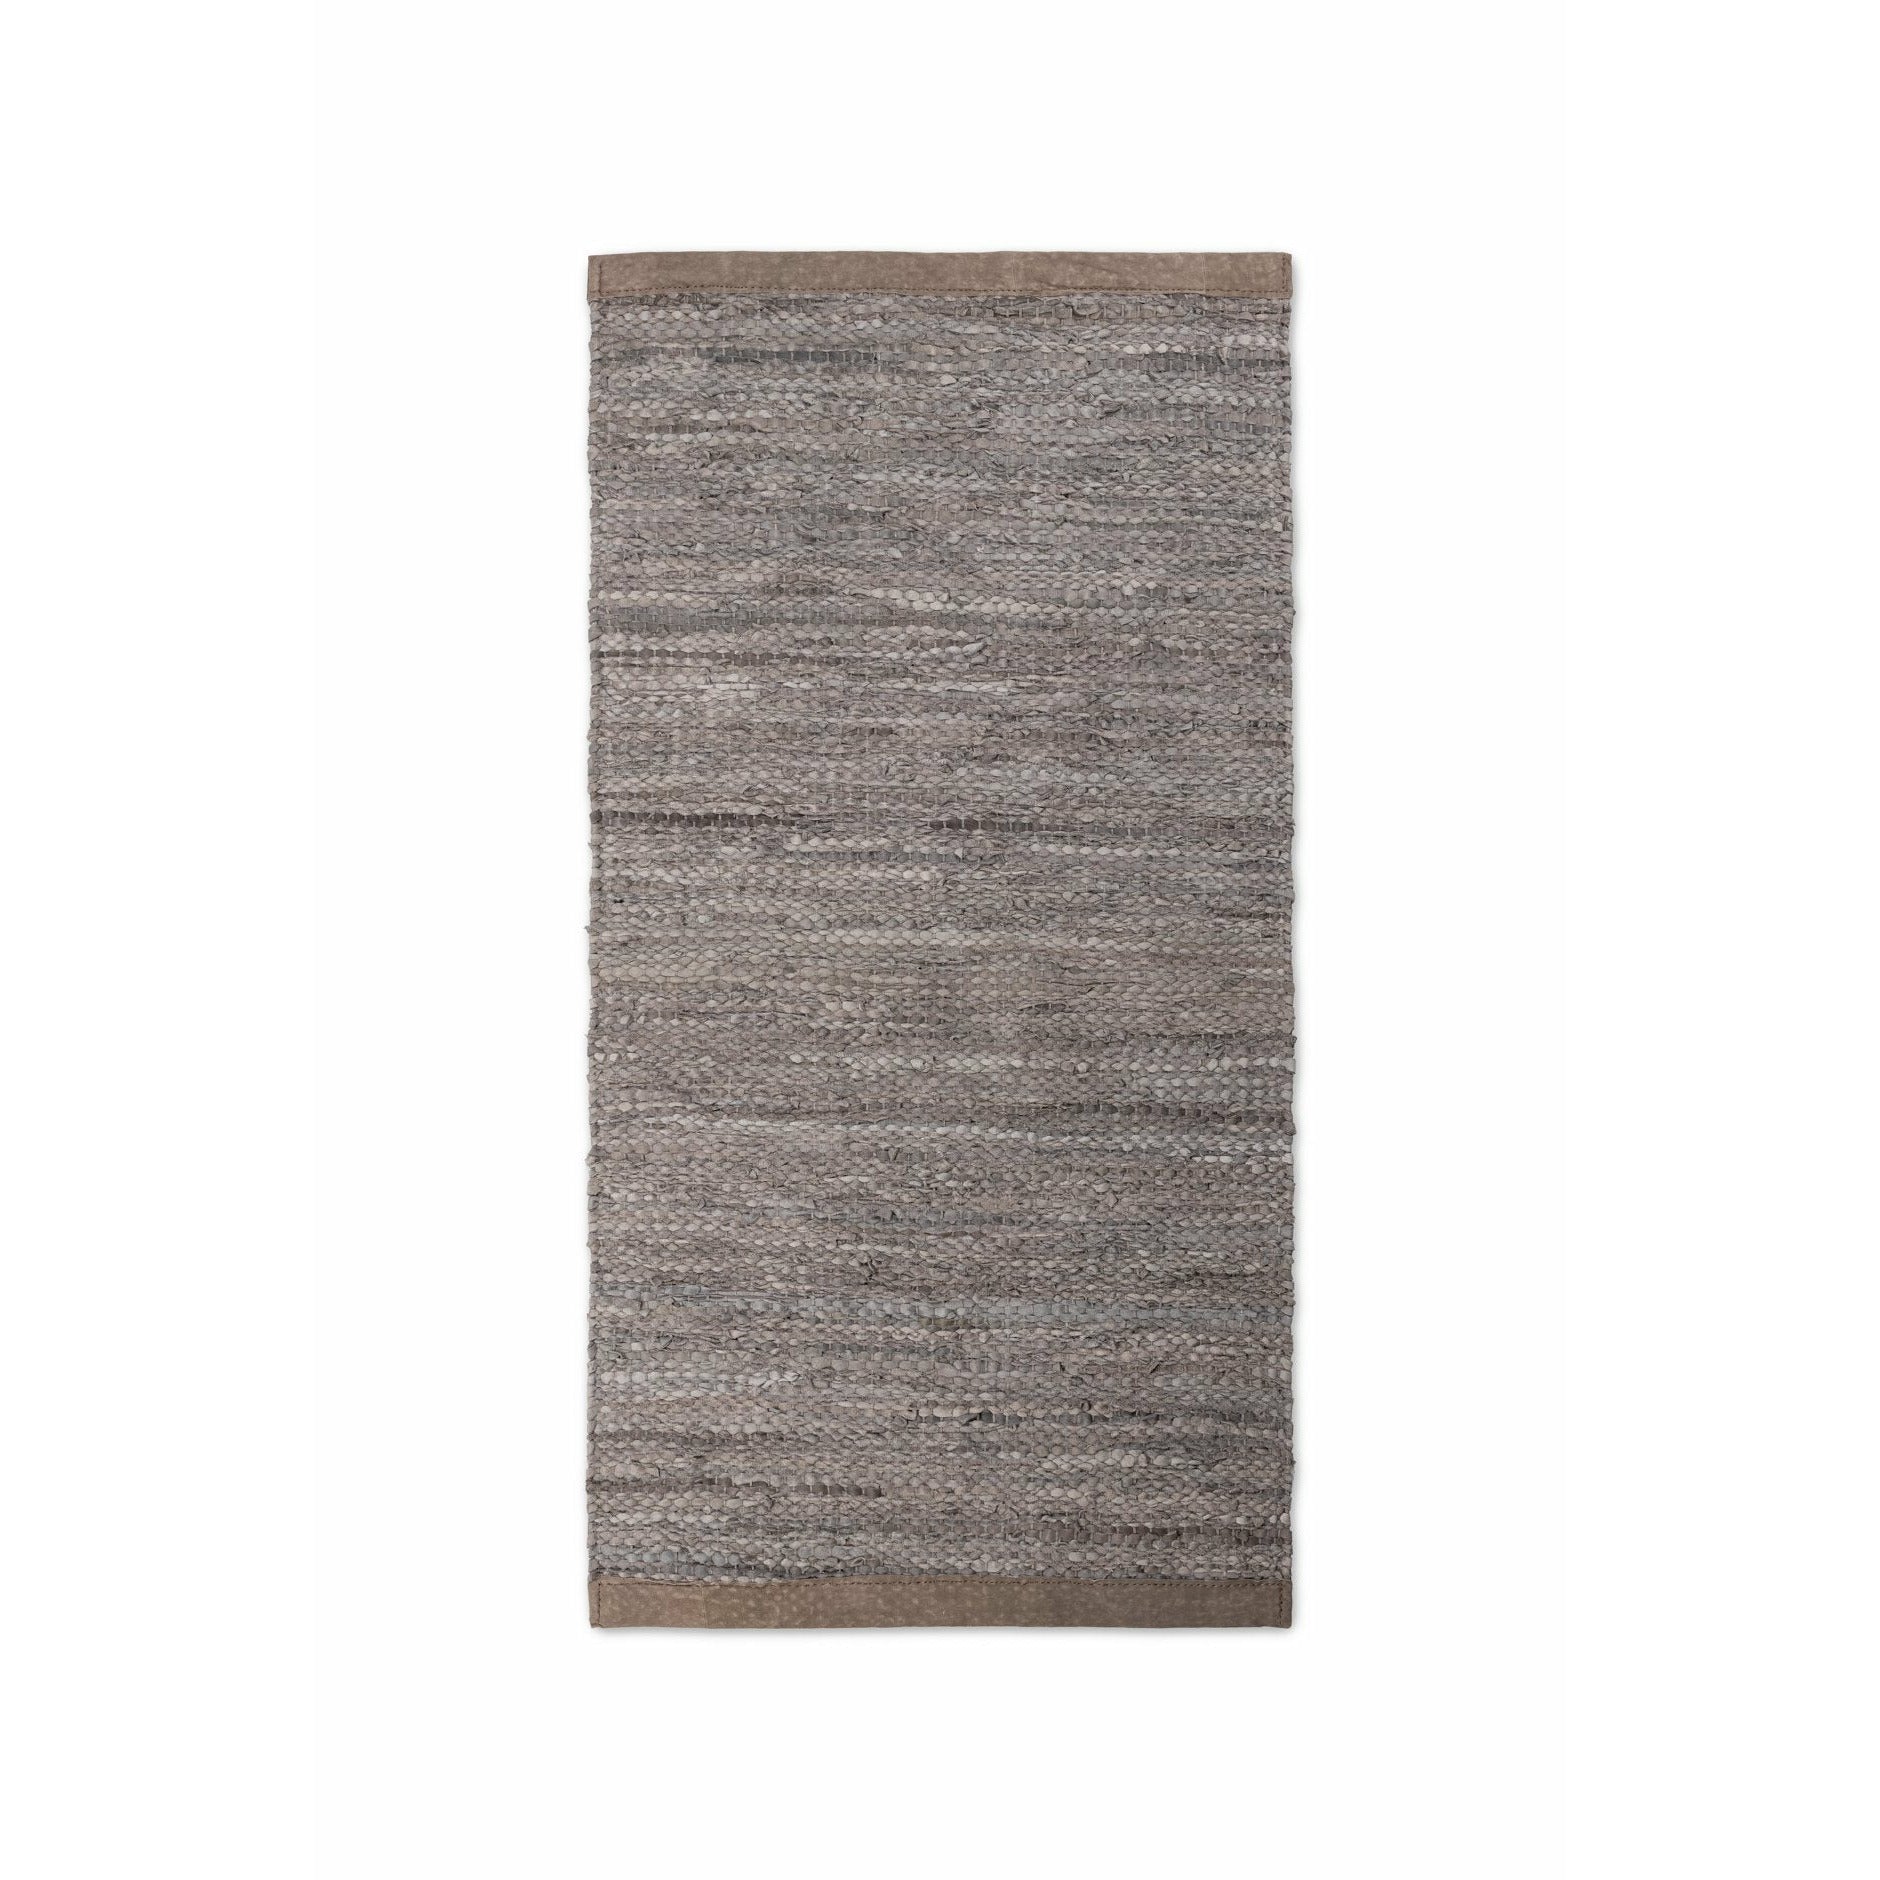 Tappeto in legno con moquette in pelle solida, 75 x 300 cm